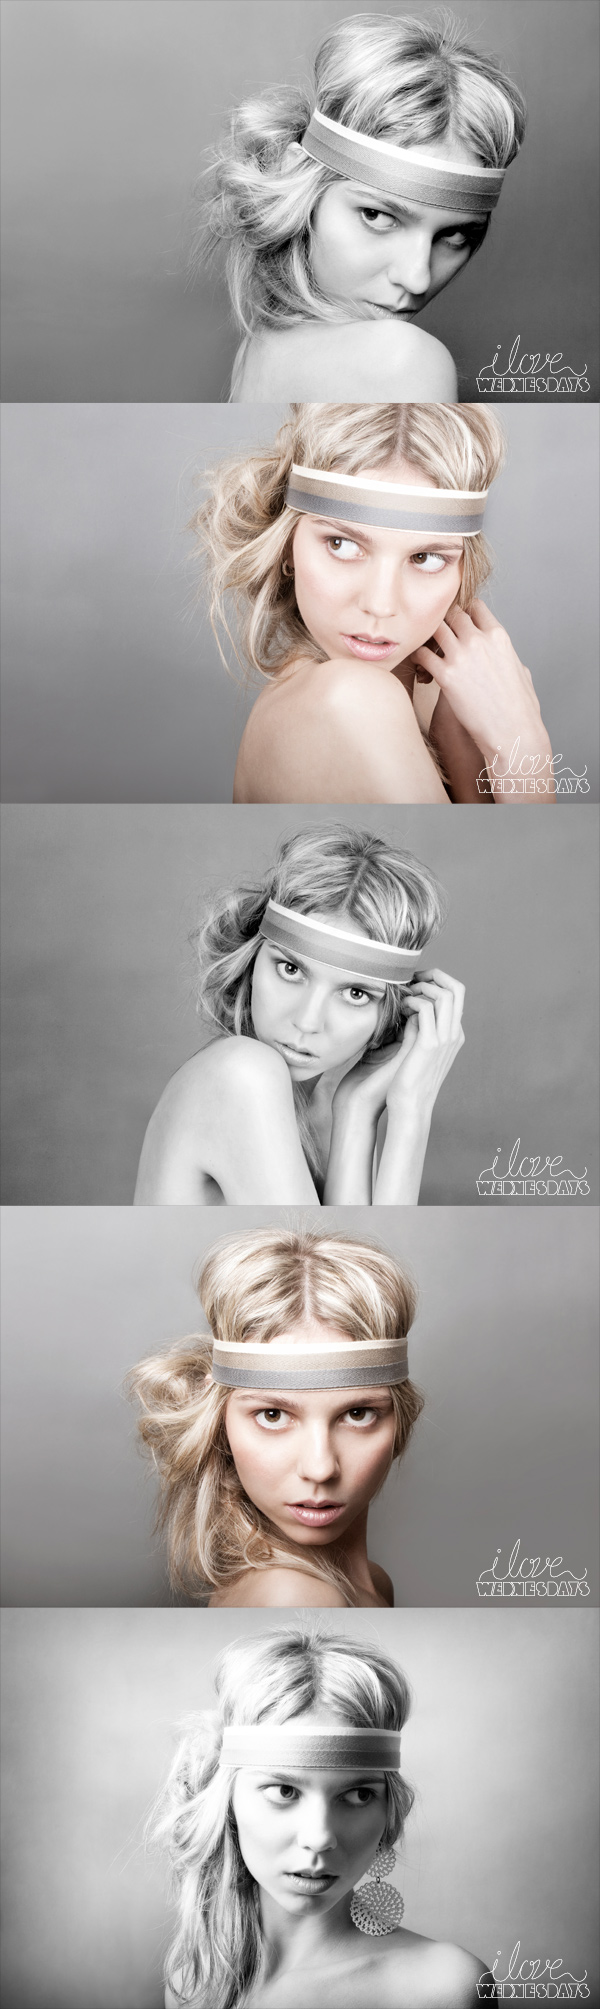 Female model photo shoot of I Love Wednesdays Photo and I D in The I Love Wednesdays Studio, makeup by natbiller